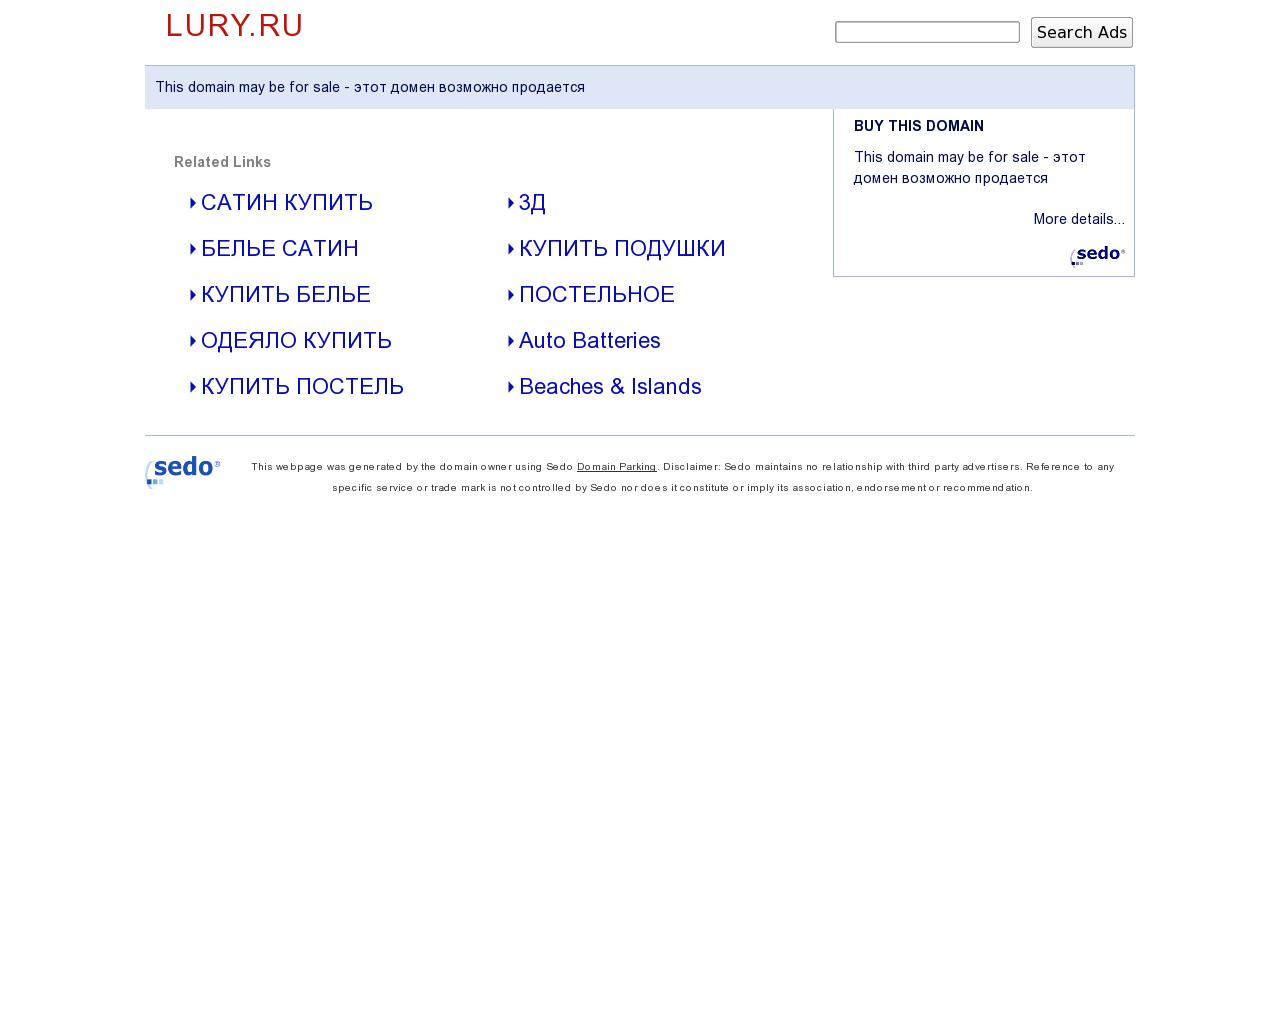 Изображение сайта lury.ru в разрешении 1280x1024